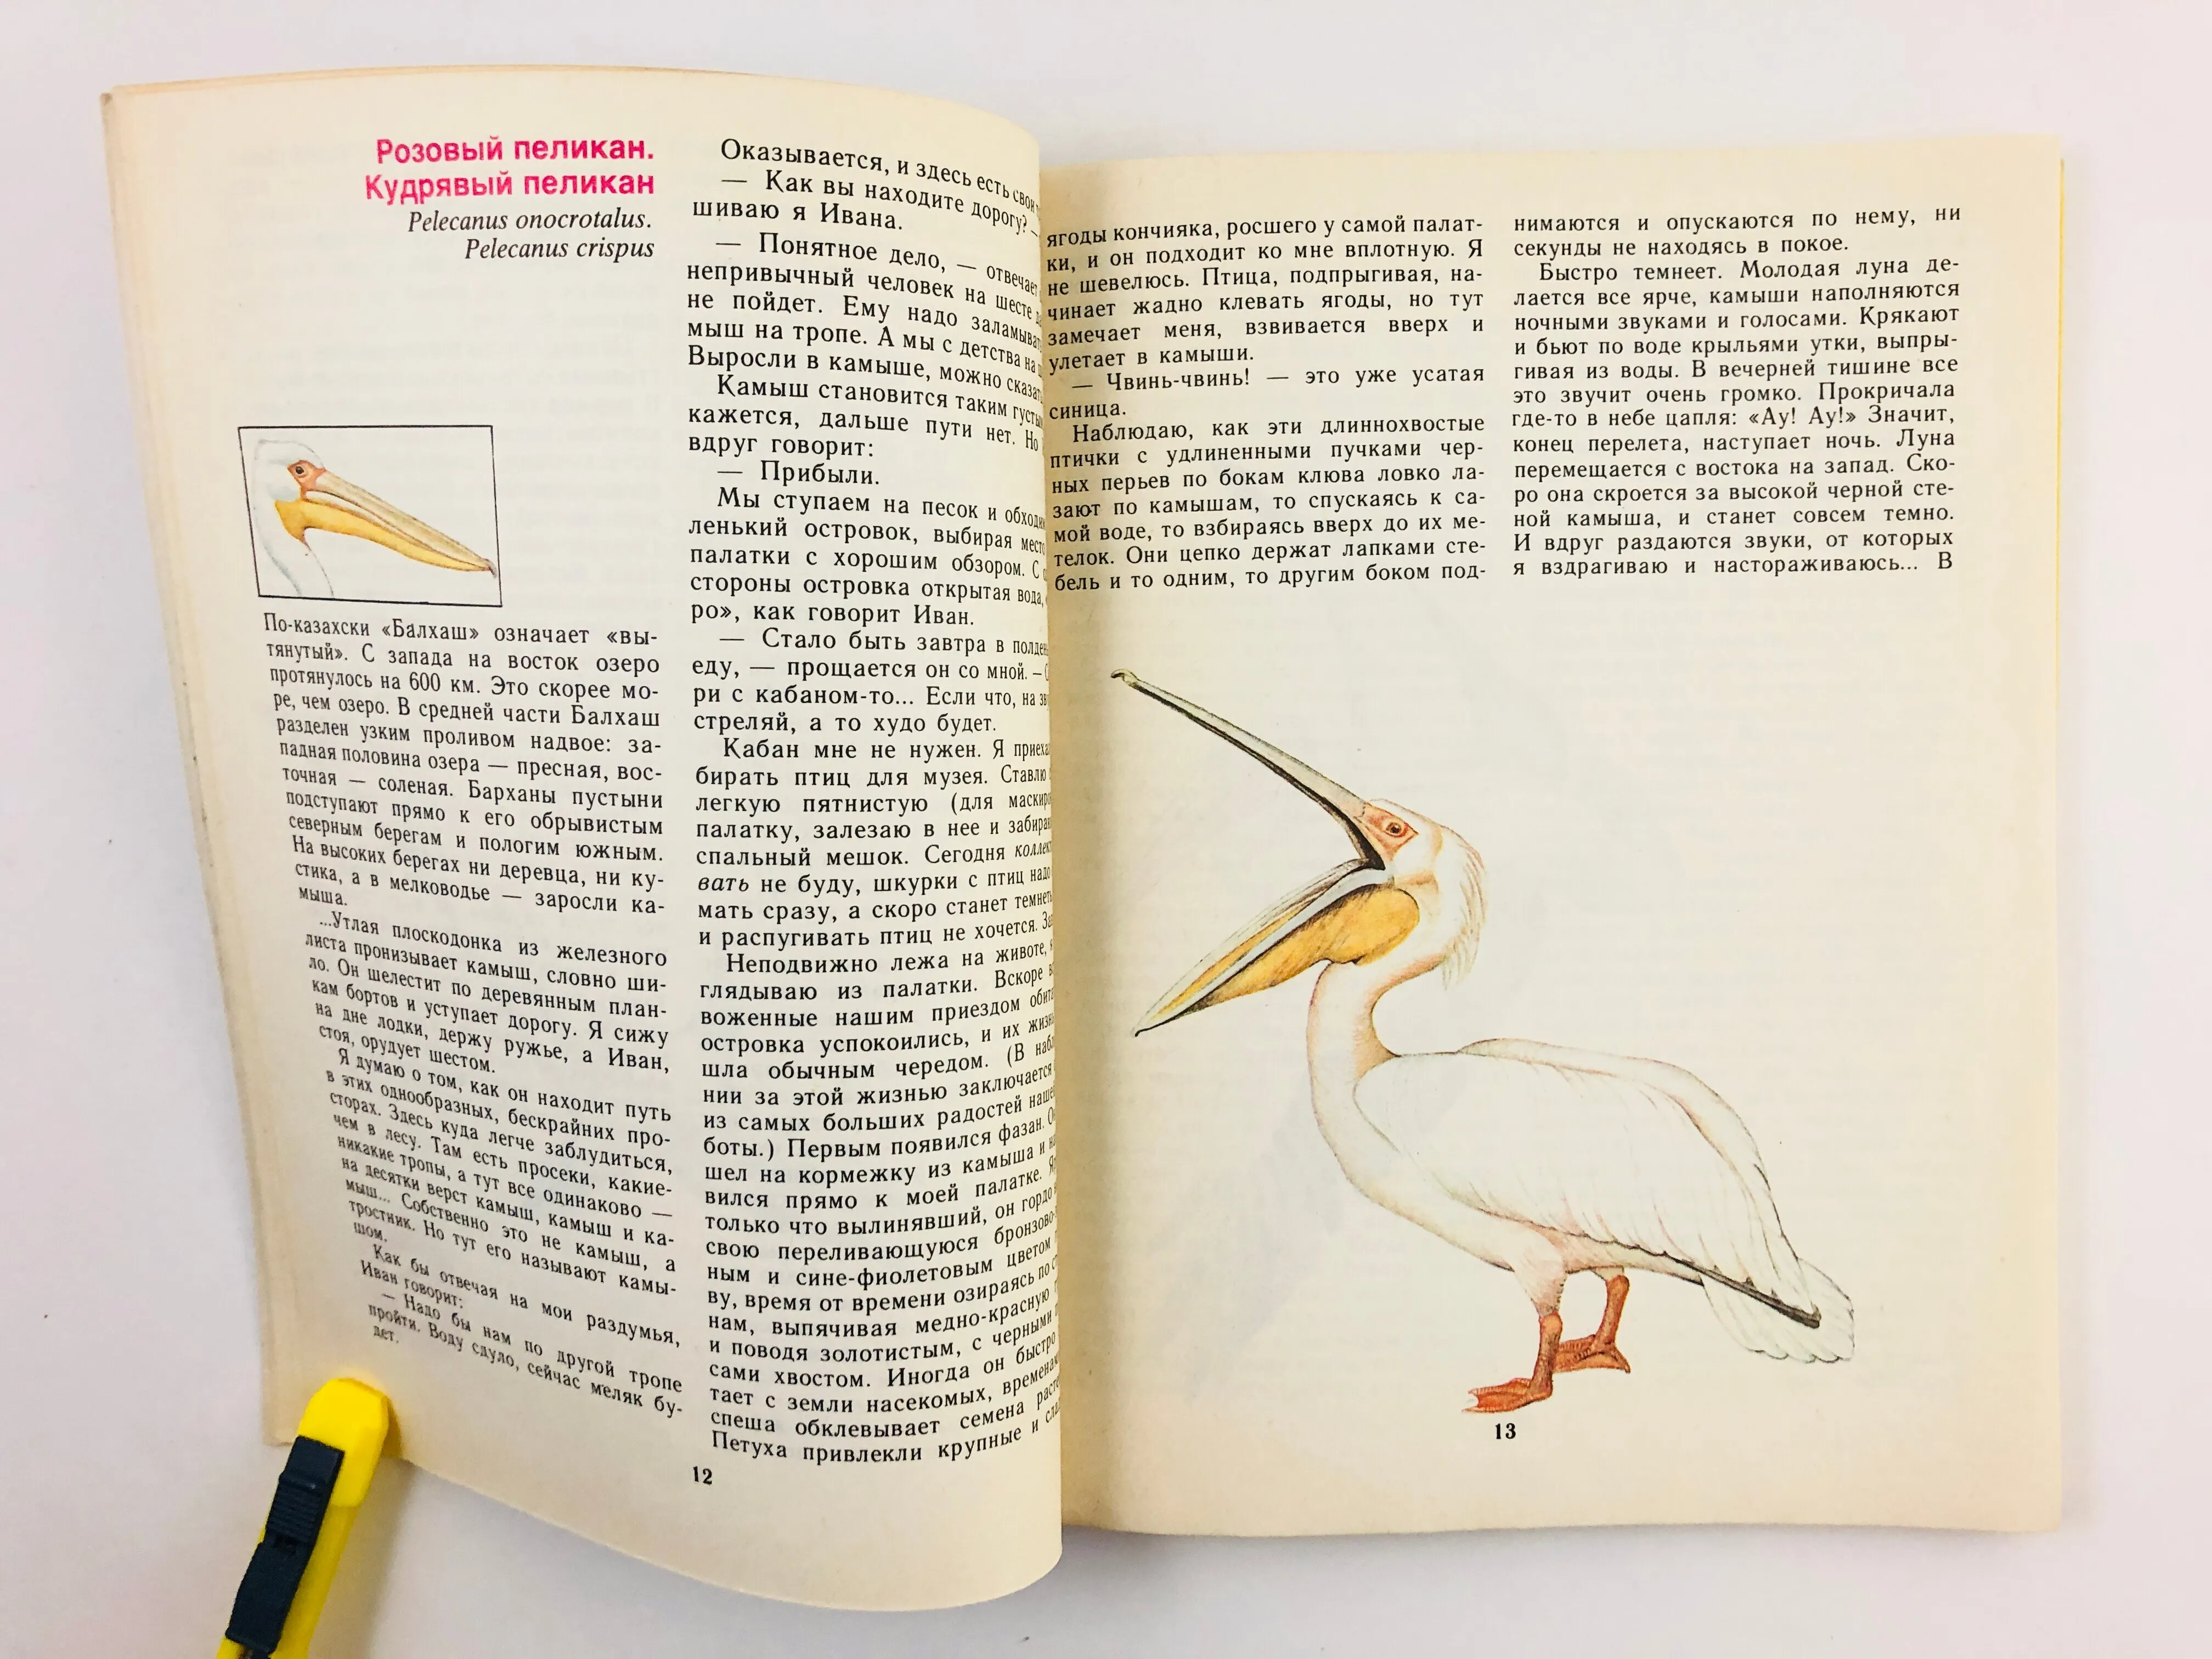 Содержание птиц книги